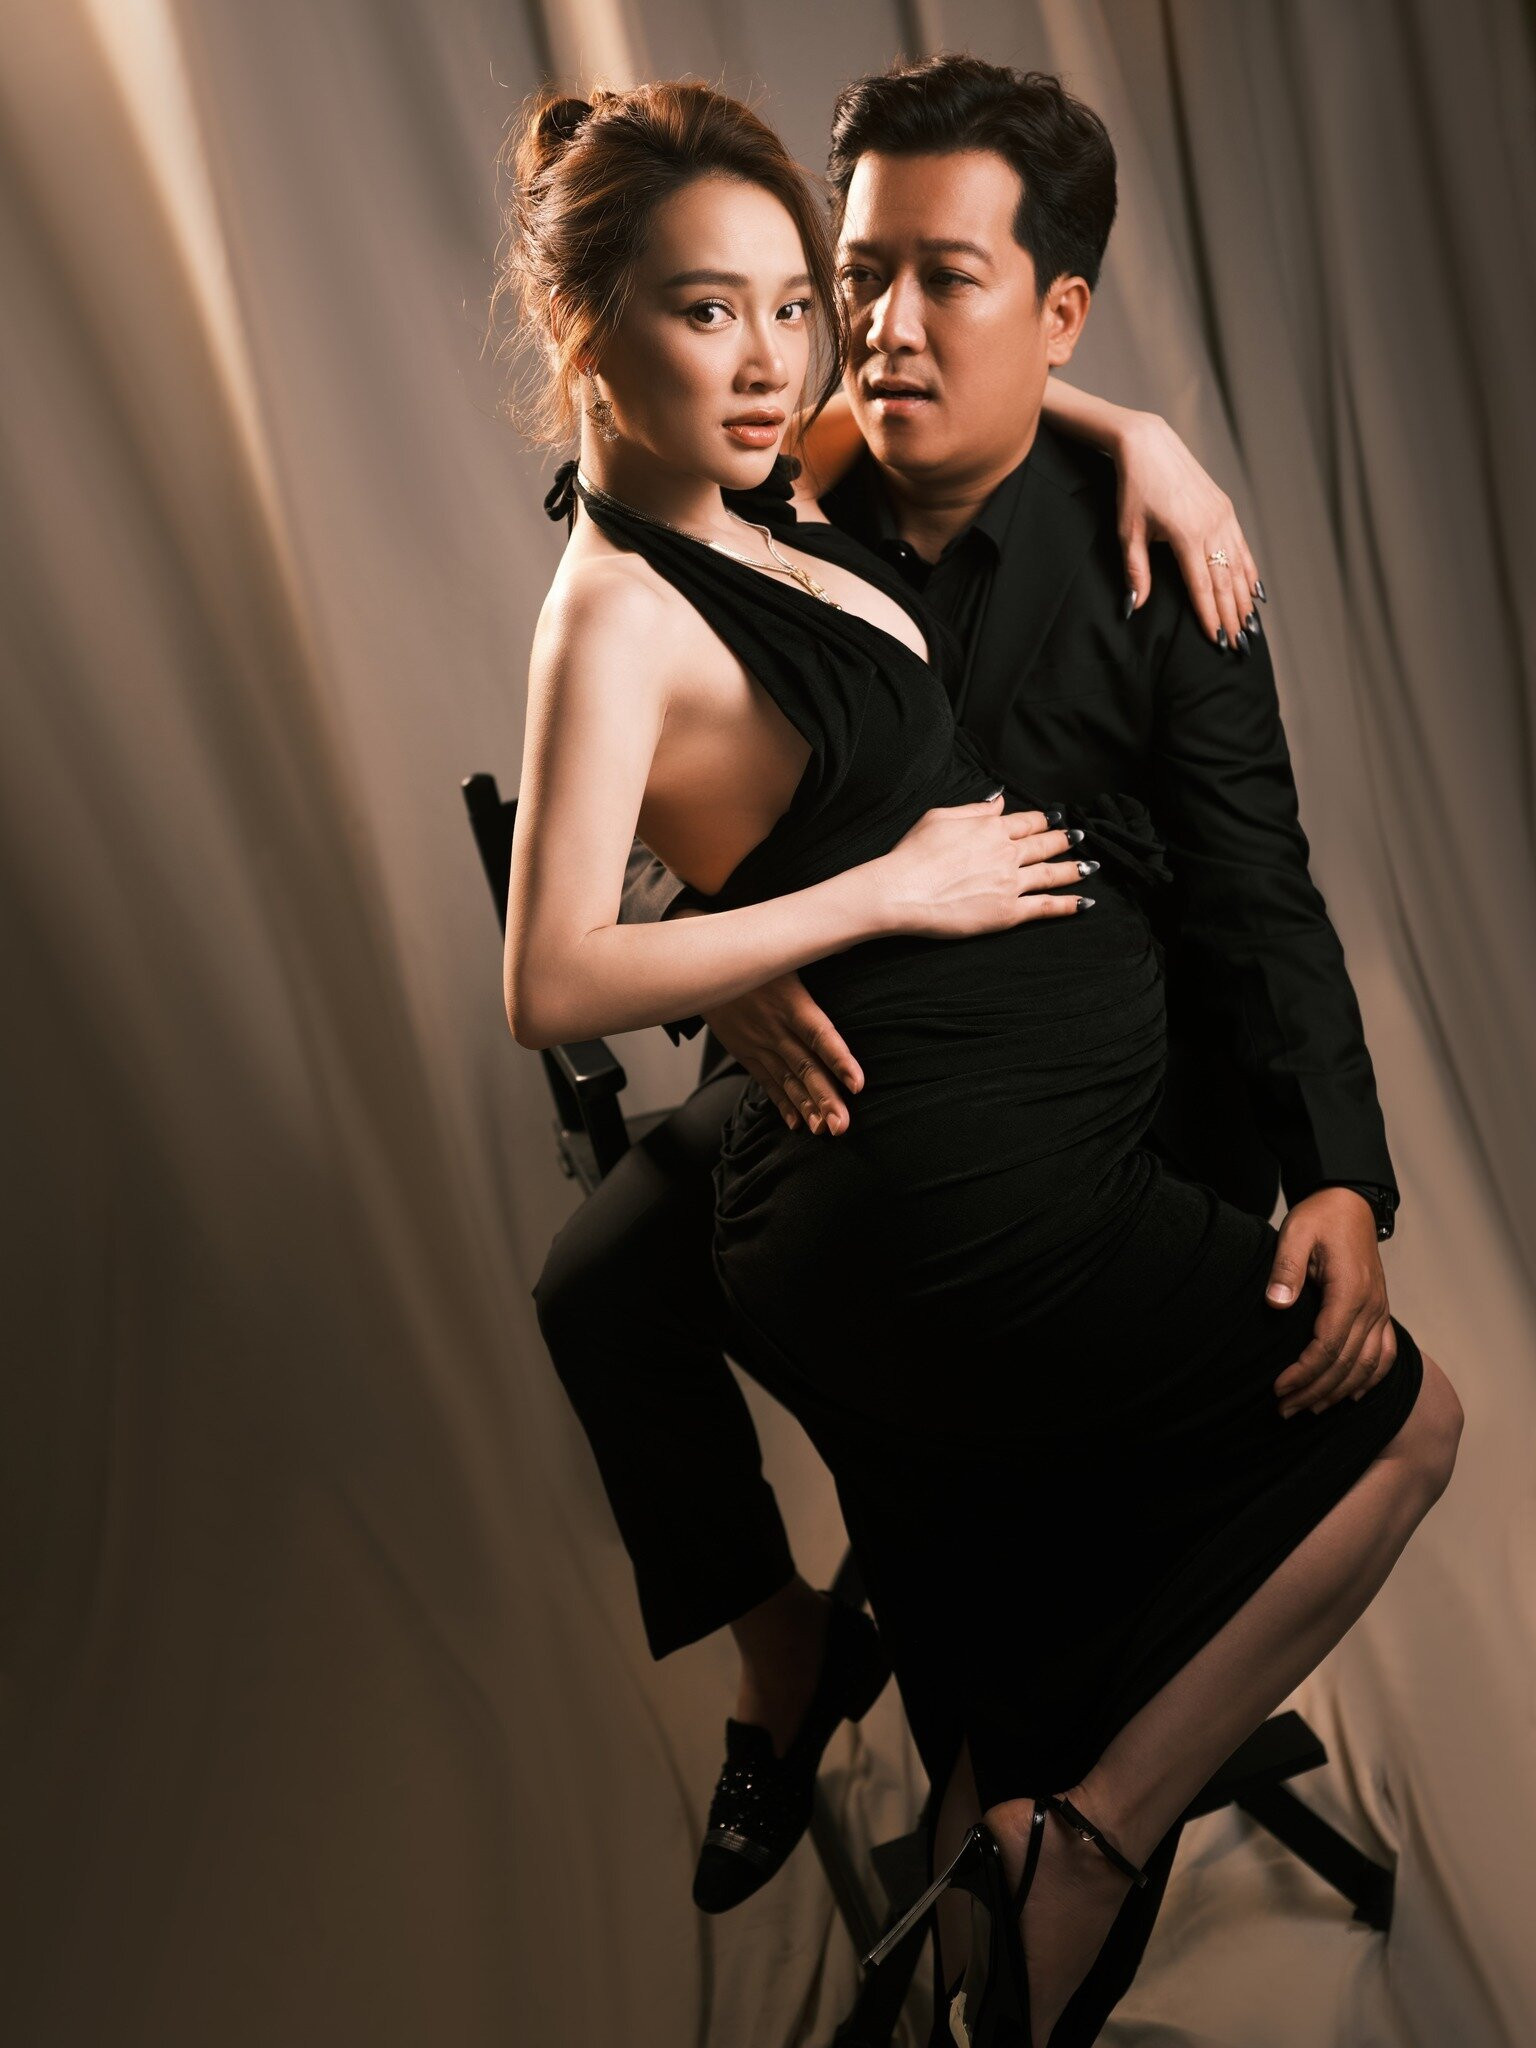 Xuất hiện bên cạnh nữ diễn viên là ông xã - Trường Giang. Anh diện trang phục đen đồng điệu với vợ.